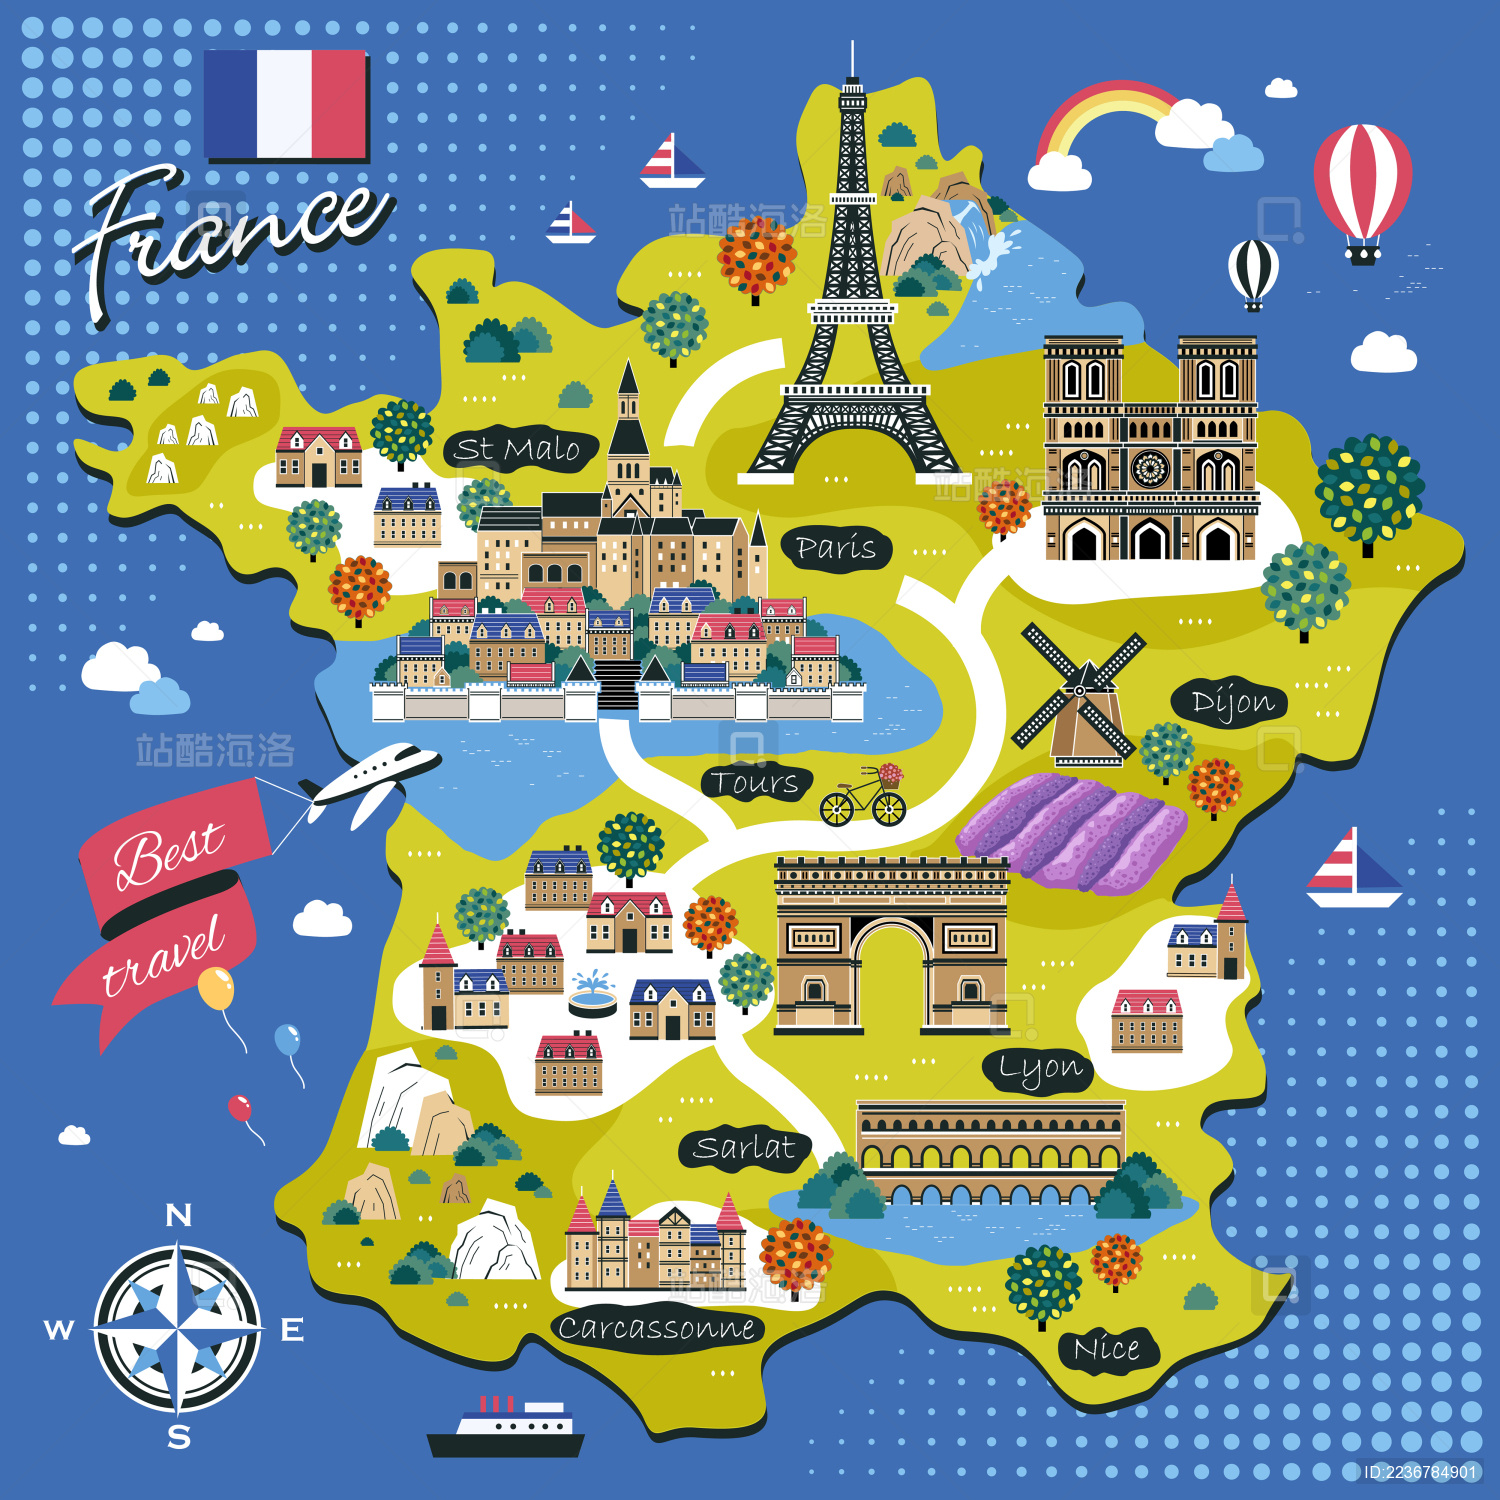 法国卢瓦尔河谷城堡群一日游|香波堡|舍农索城堡|葡萄酒品鉴-环欧洲旅游